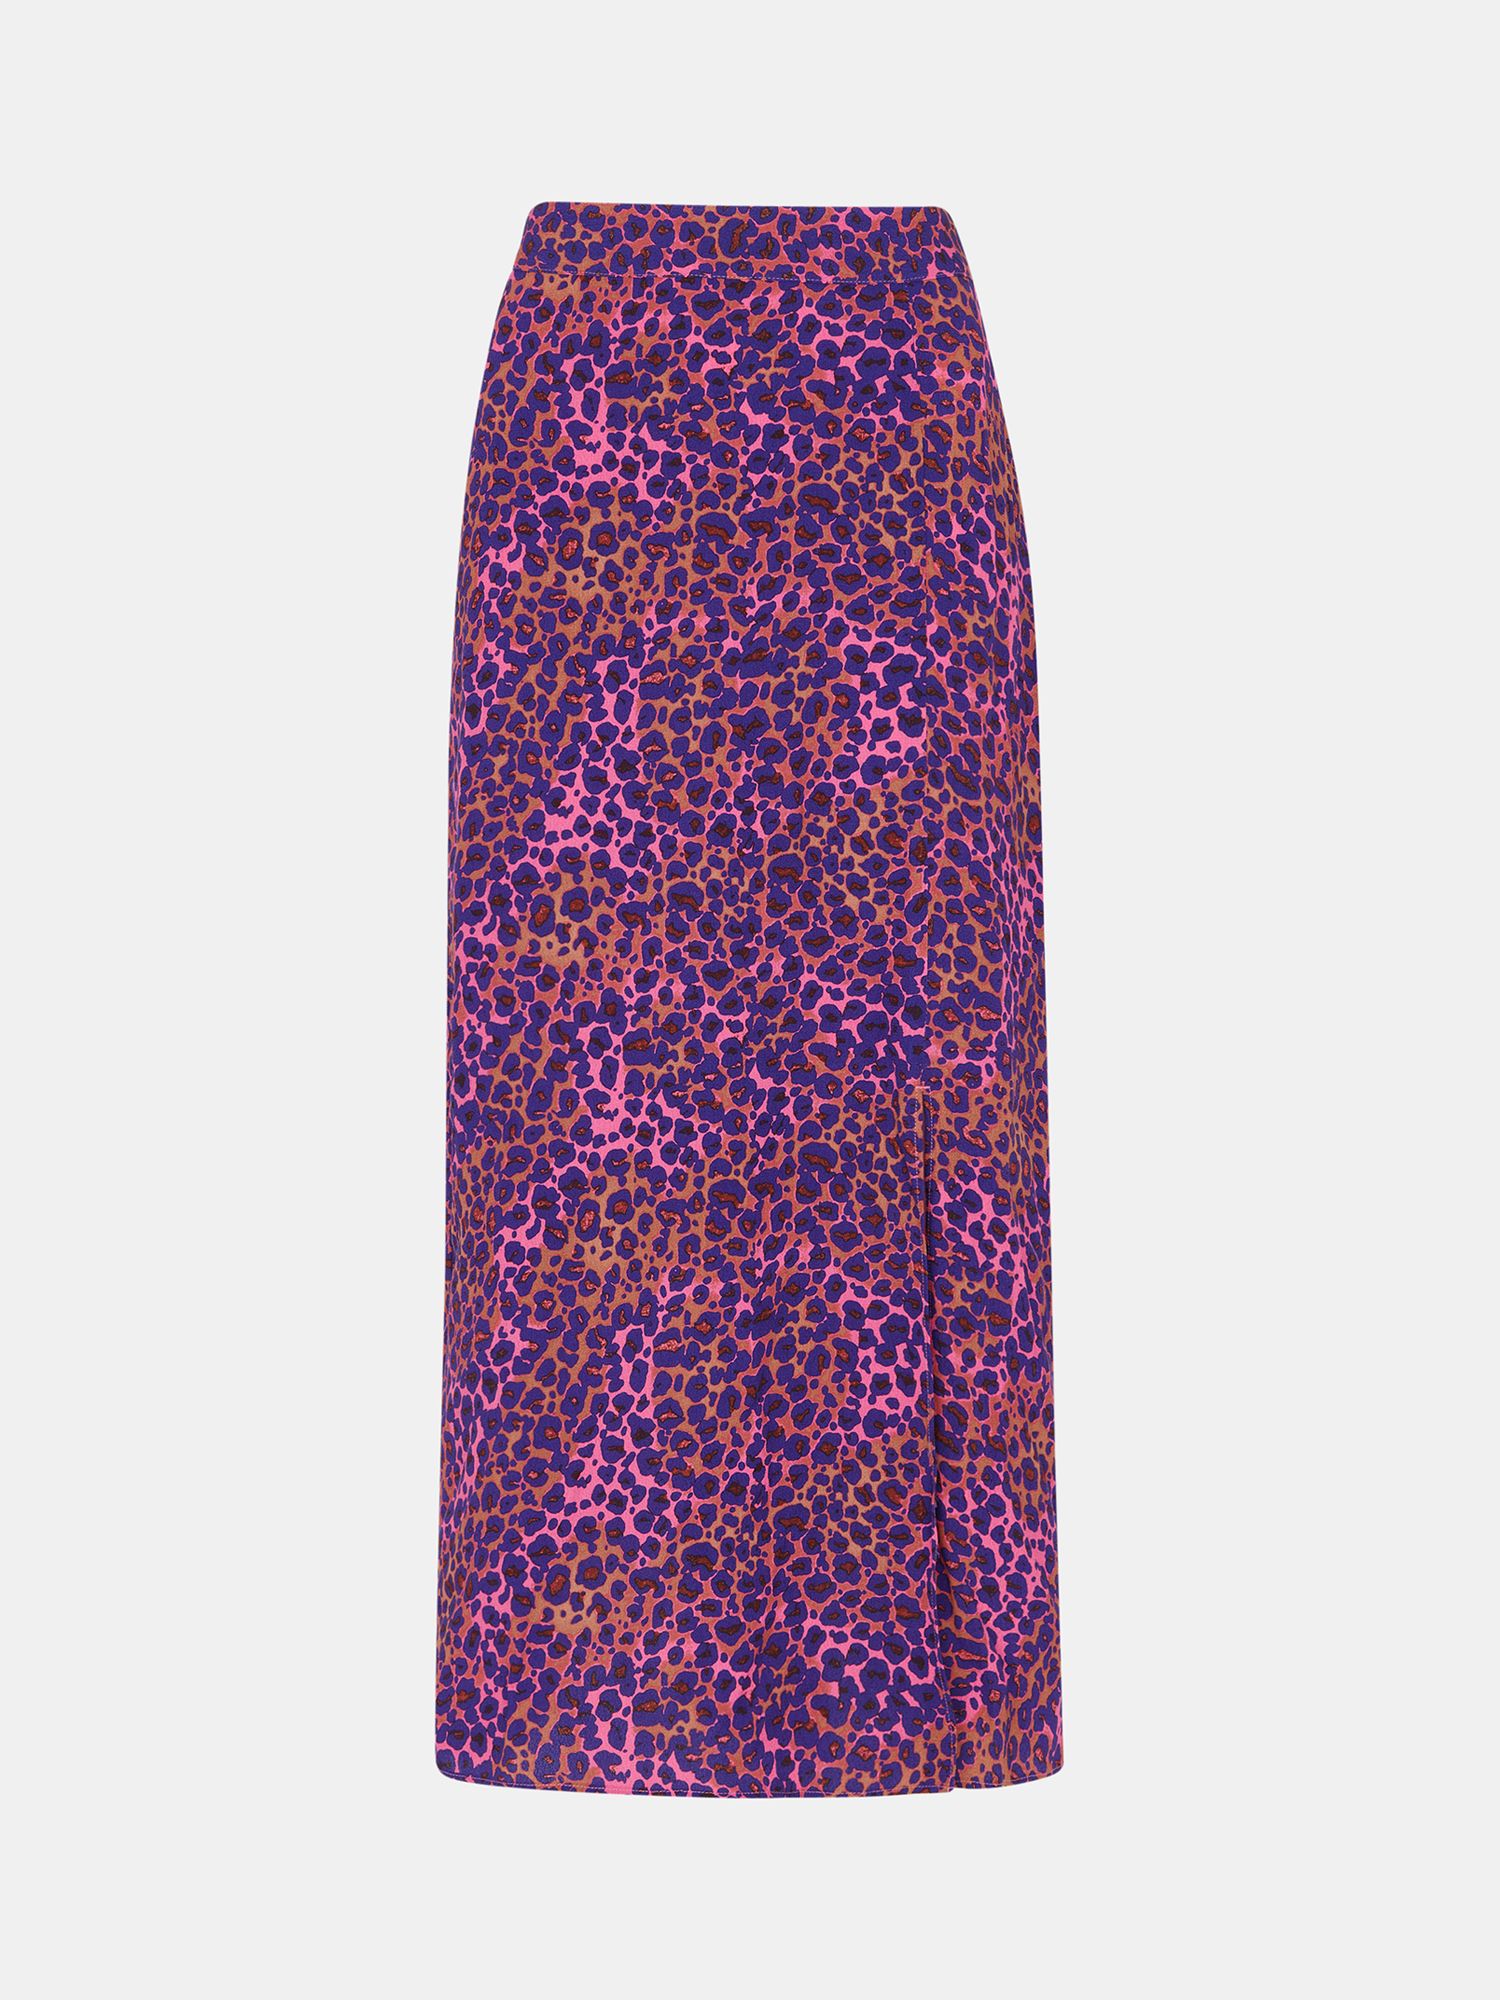 Buy Whistles Mottled Leopard Print Midi Skirt, Pink/Multi Online at johnlewis.com